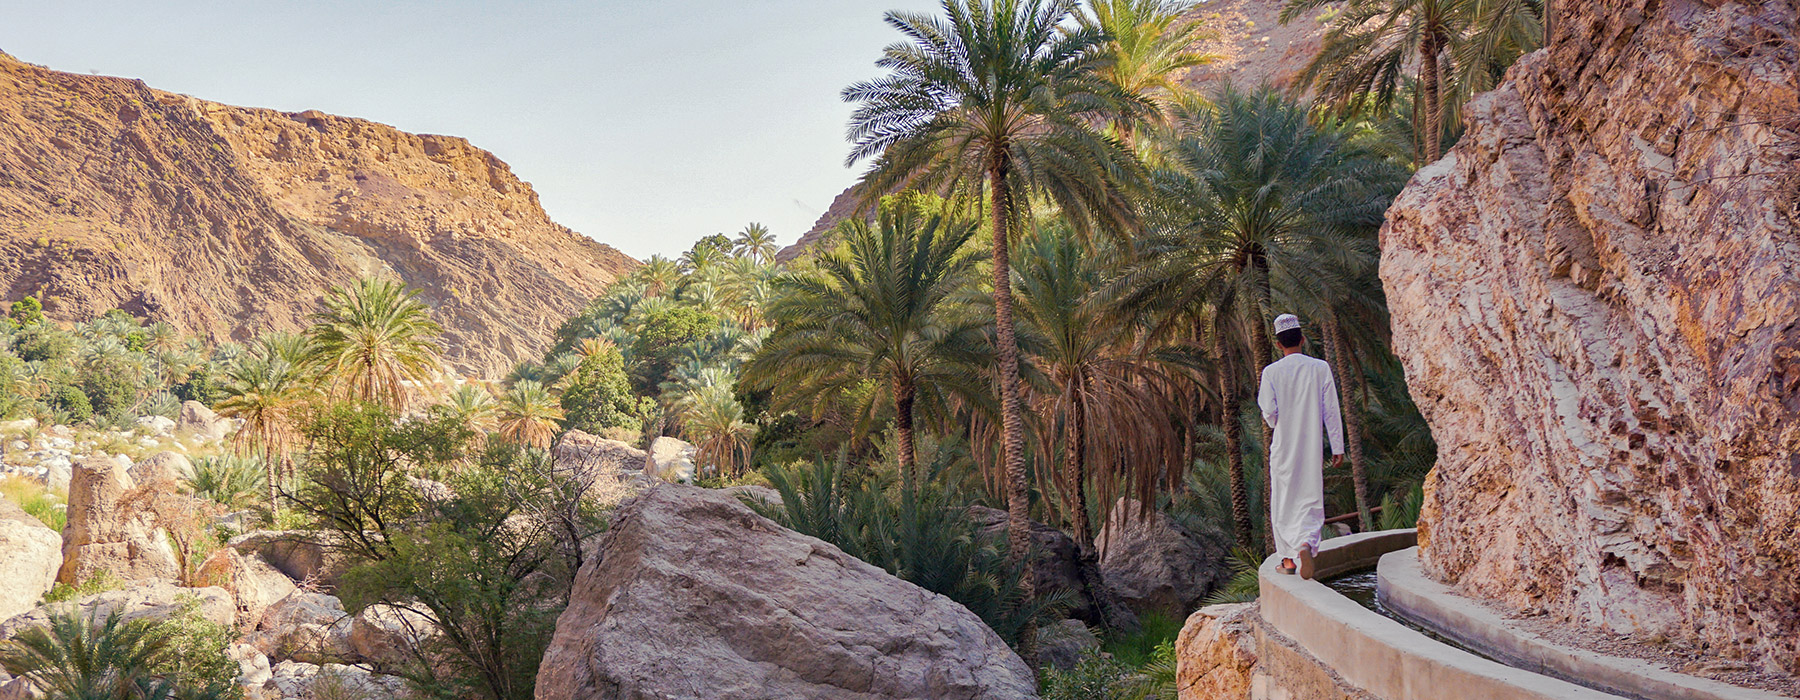 Routes mythiques Oman